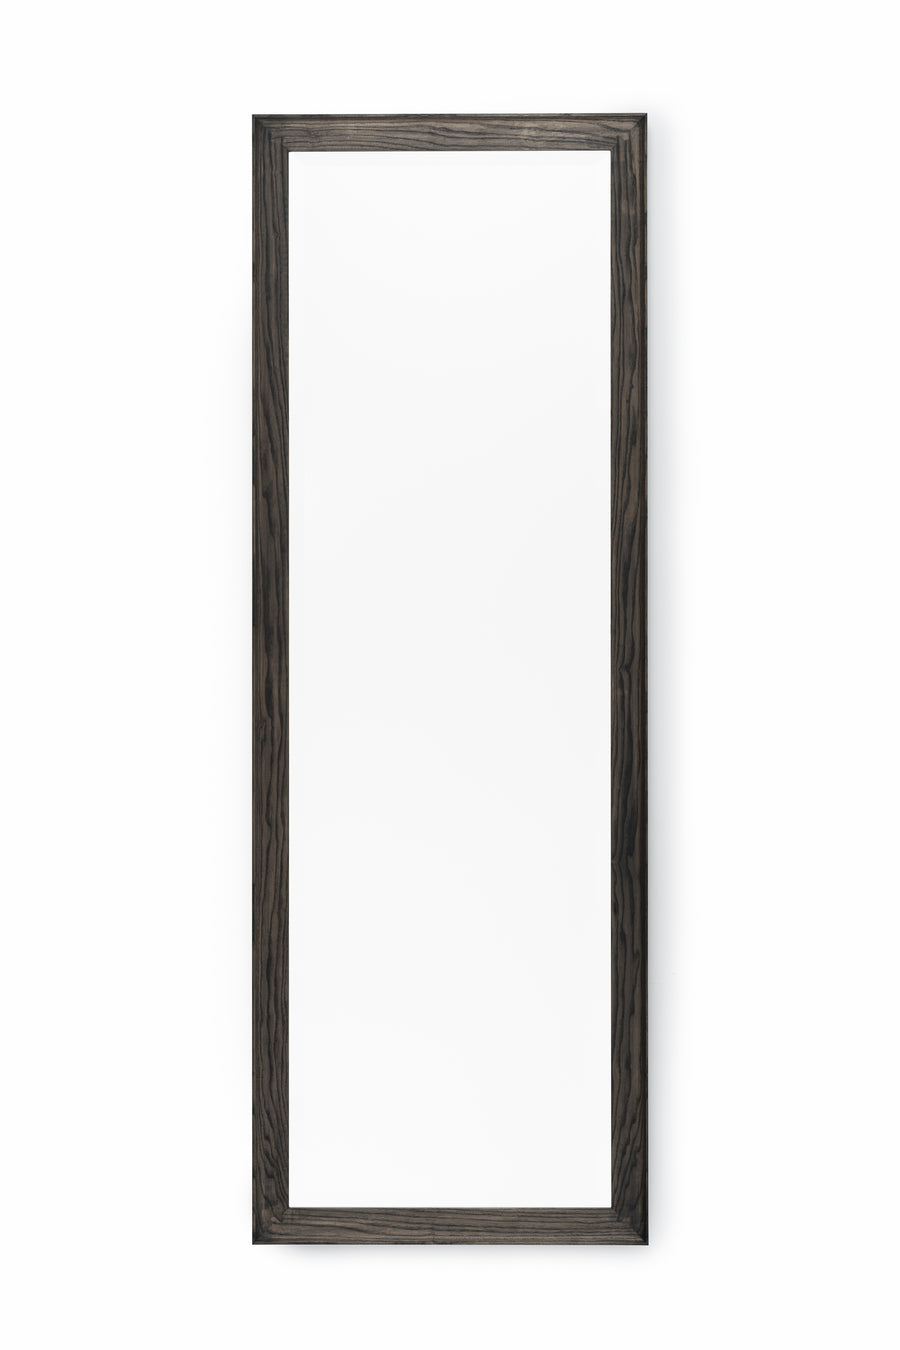 Coniston Large Rectangular Mirror